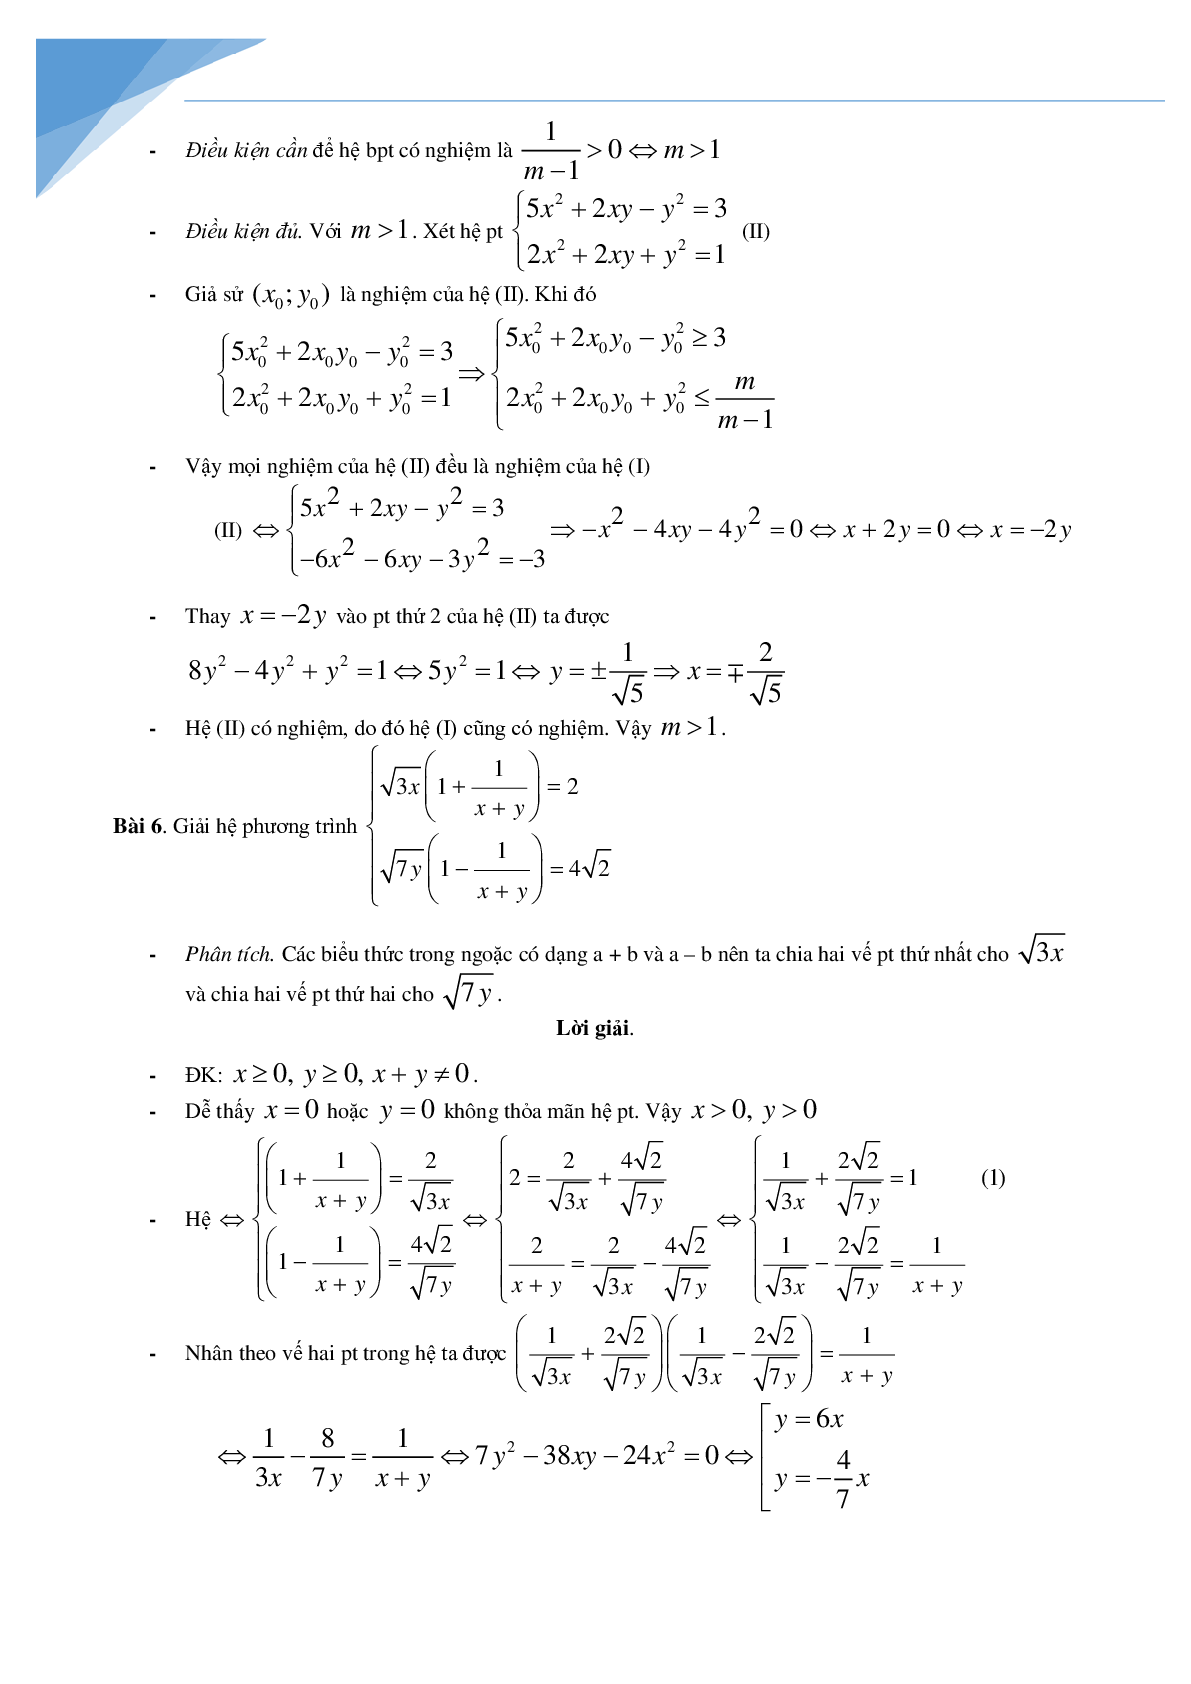 Chuyên đề hệ phương trình bồi dưỡng học sinh giỏi toán (trang 7)